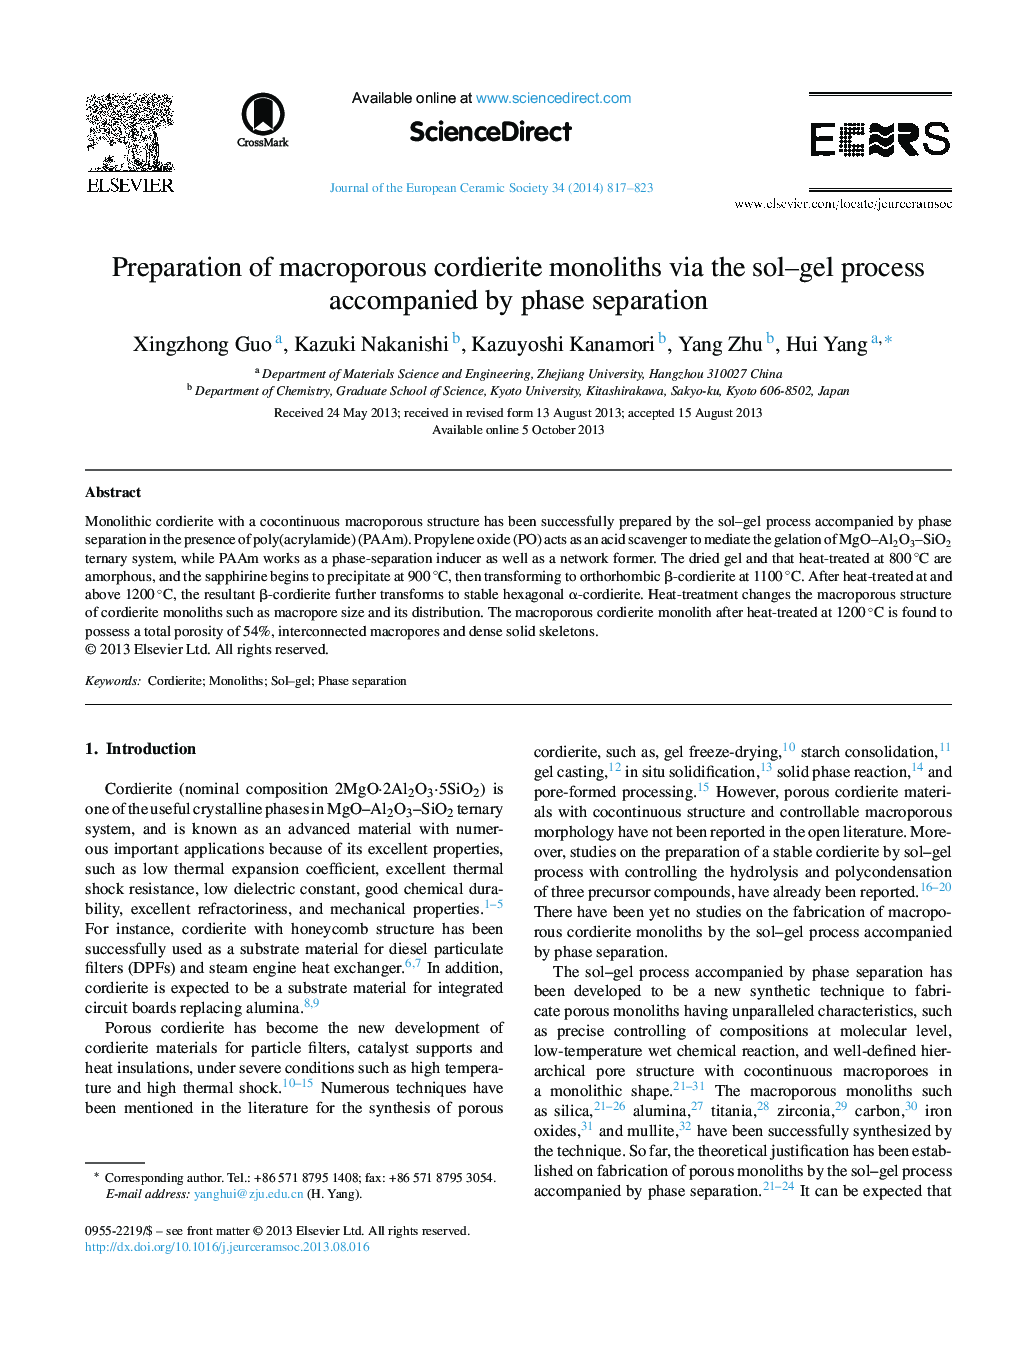 آماده سازی مونولیتهای کوردیریت کلروروئید از طریق فرایند سل-ژل همراه با جداسازی فاز 